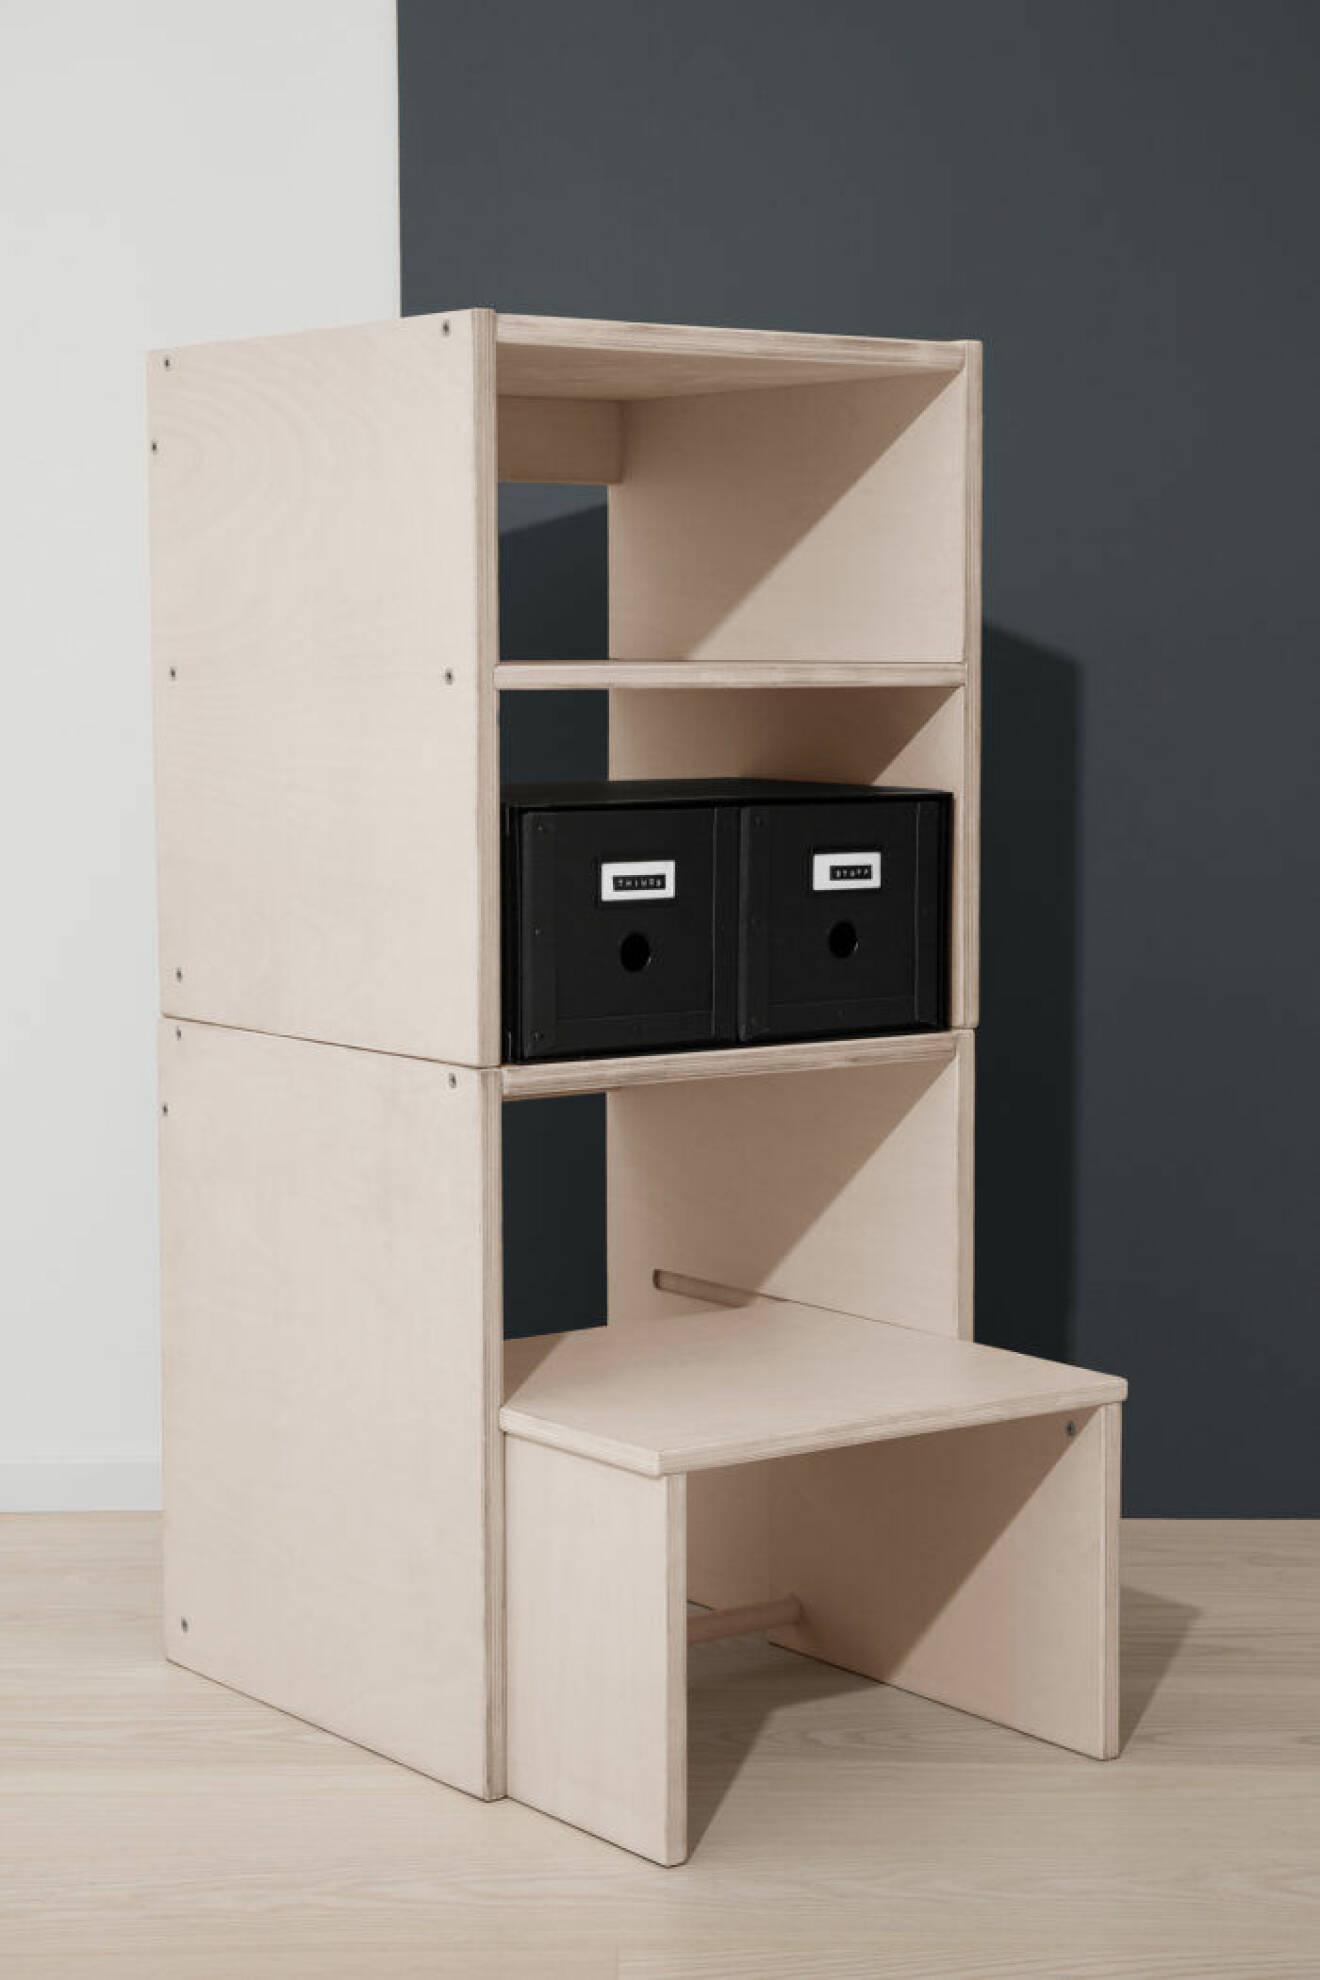 Granits nya möbler är moduler som kan kombineras efter dina behov